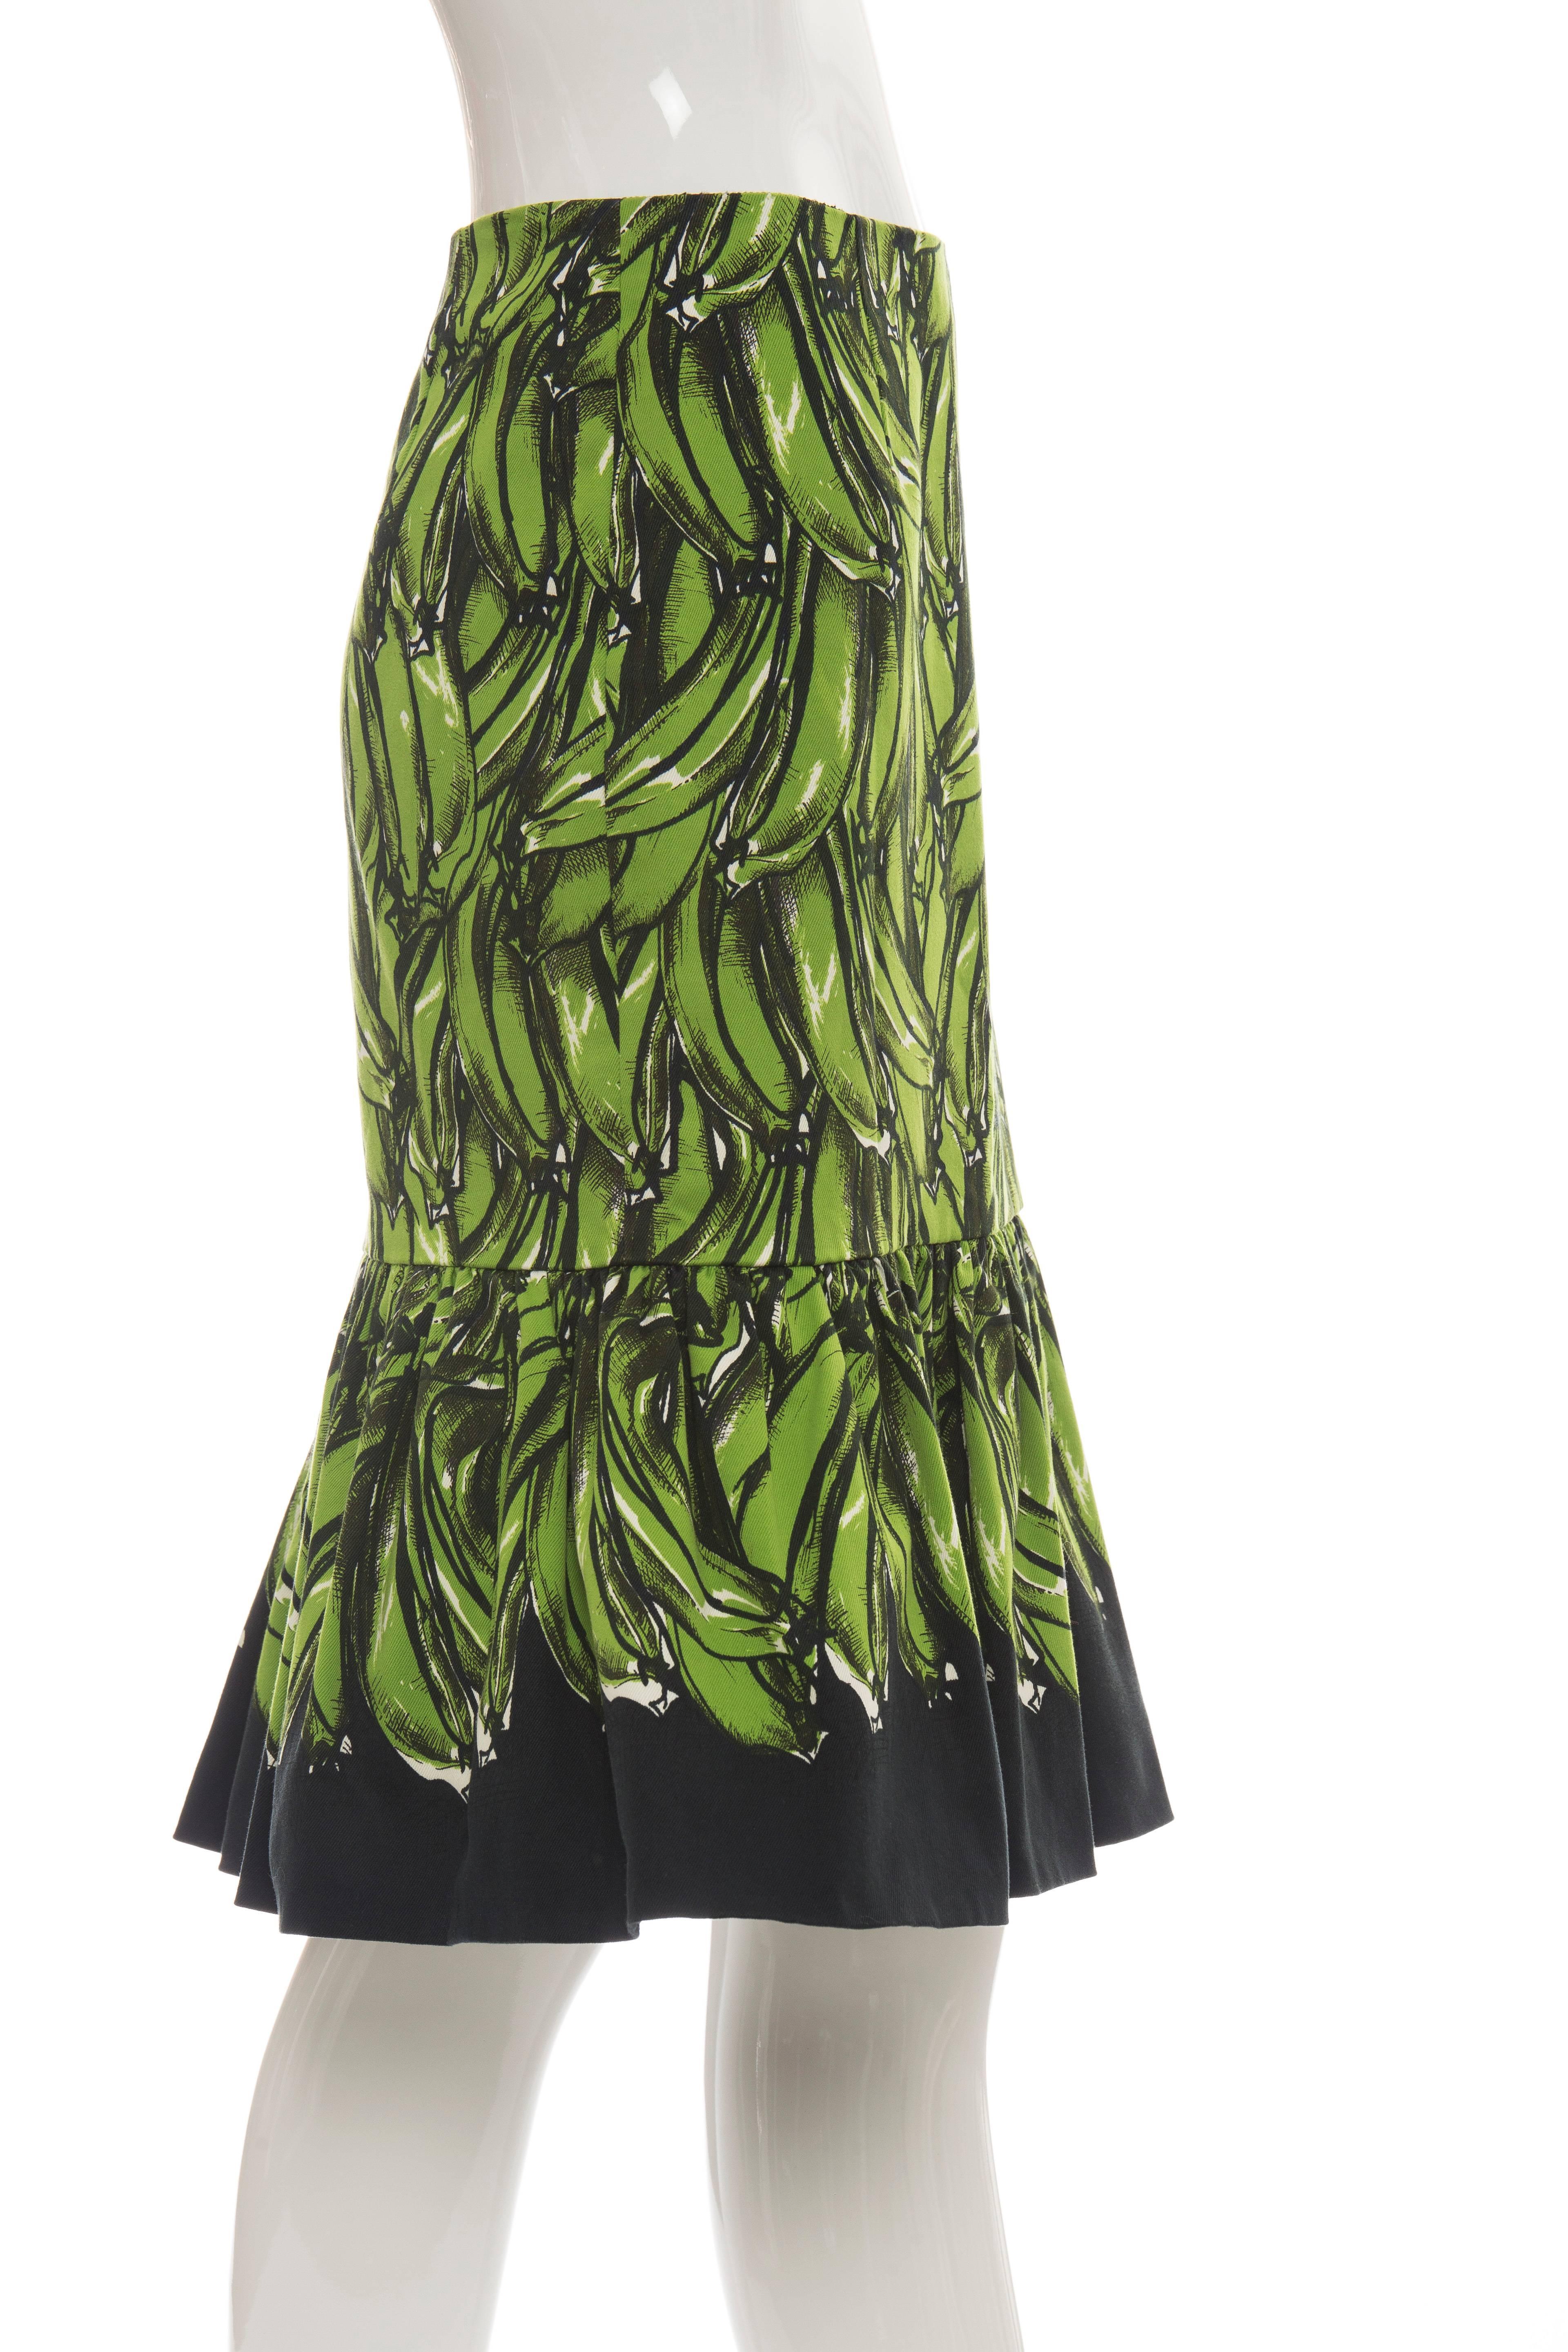 prada banana dress